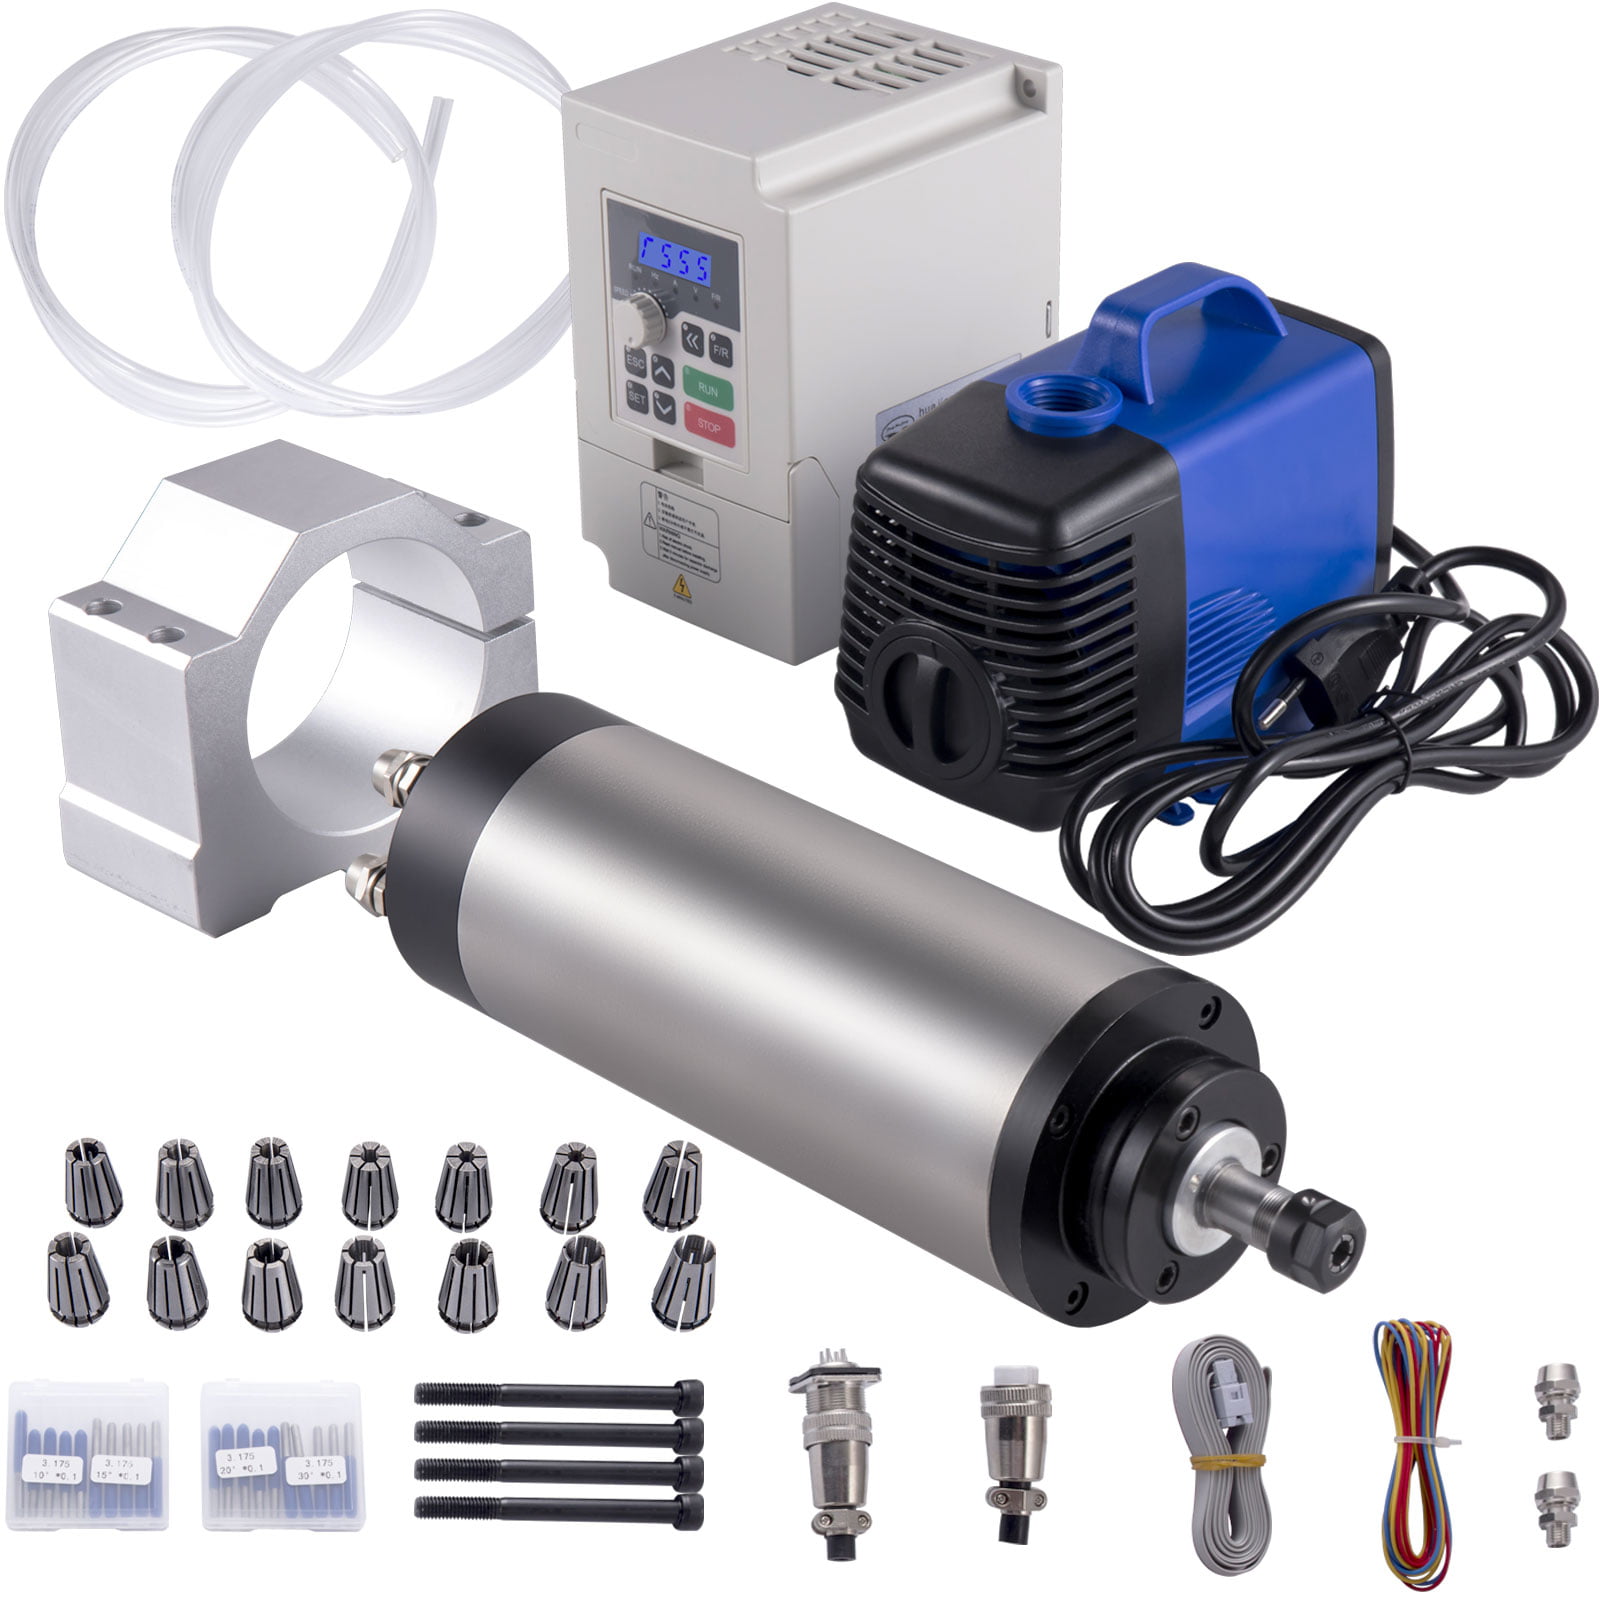 【ES】1.5KW Water Cooled Spindle Motor ER11 220V+VFD+80mm Clamp+Pump+Pipe+Collet 